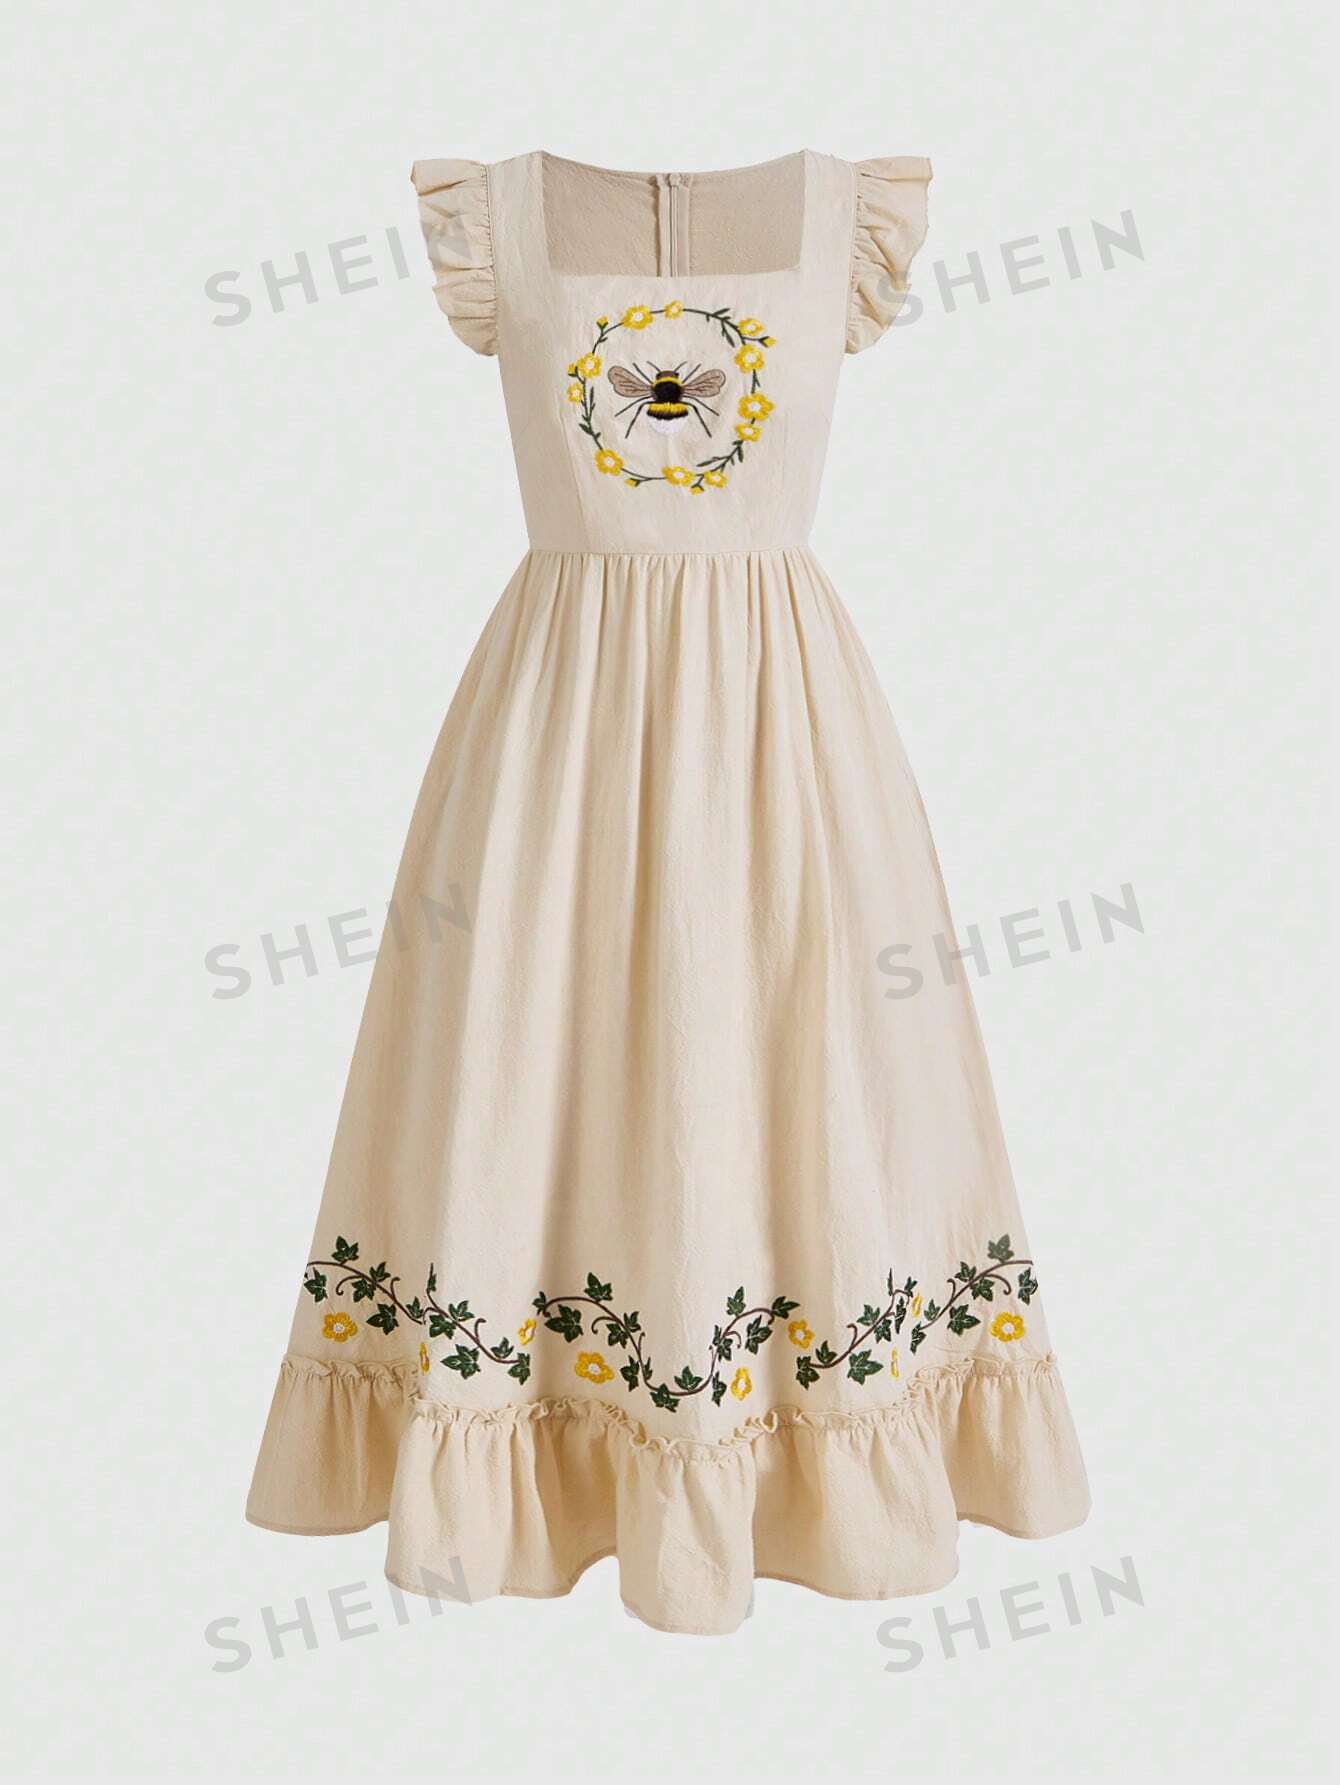 ROMWE Fairycore Vintage Cottagecore женское платье с вышивкой пчелы и развевающимися рукавами в стиле кантри, абрикос